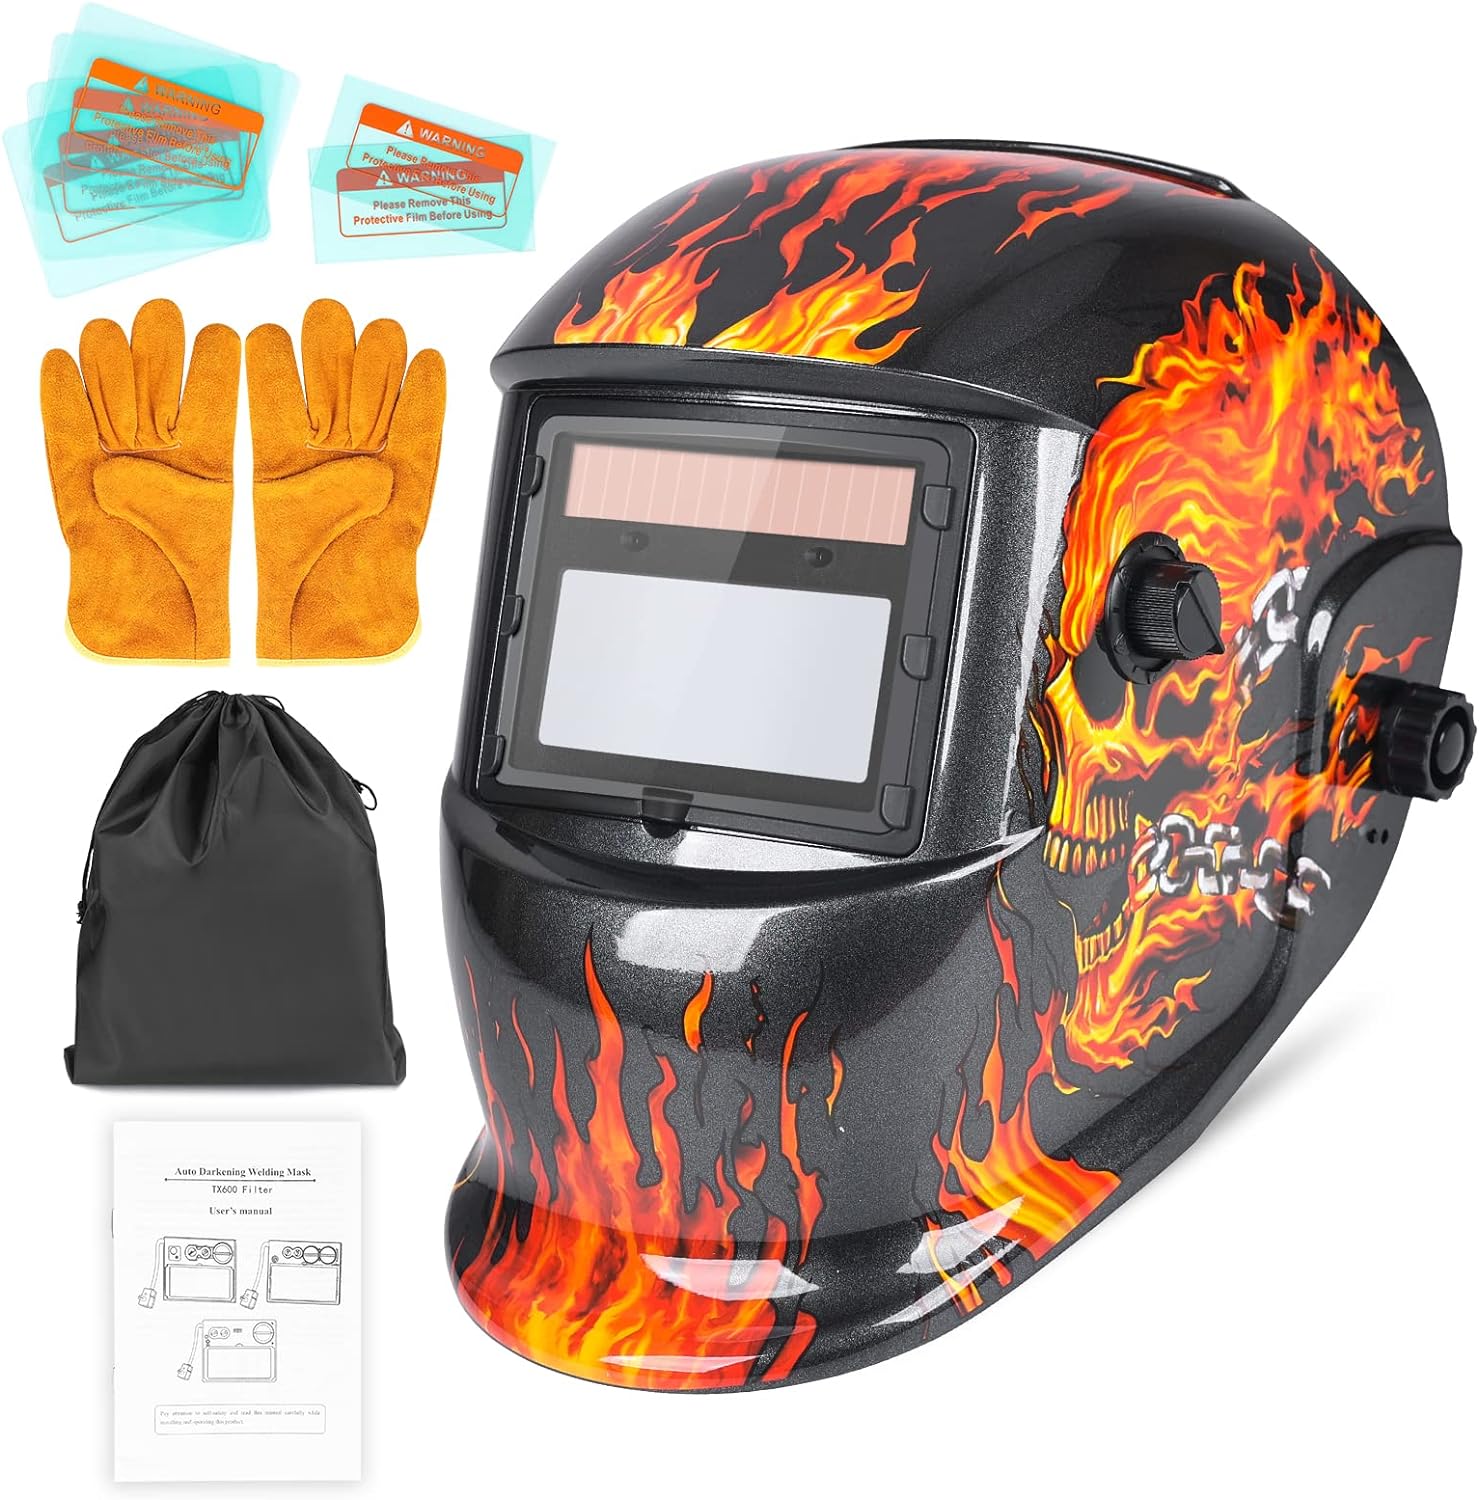 nduun welding helmet review